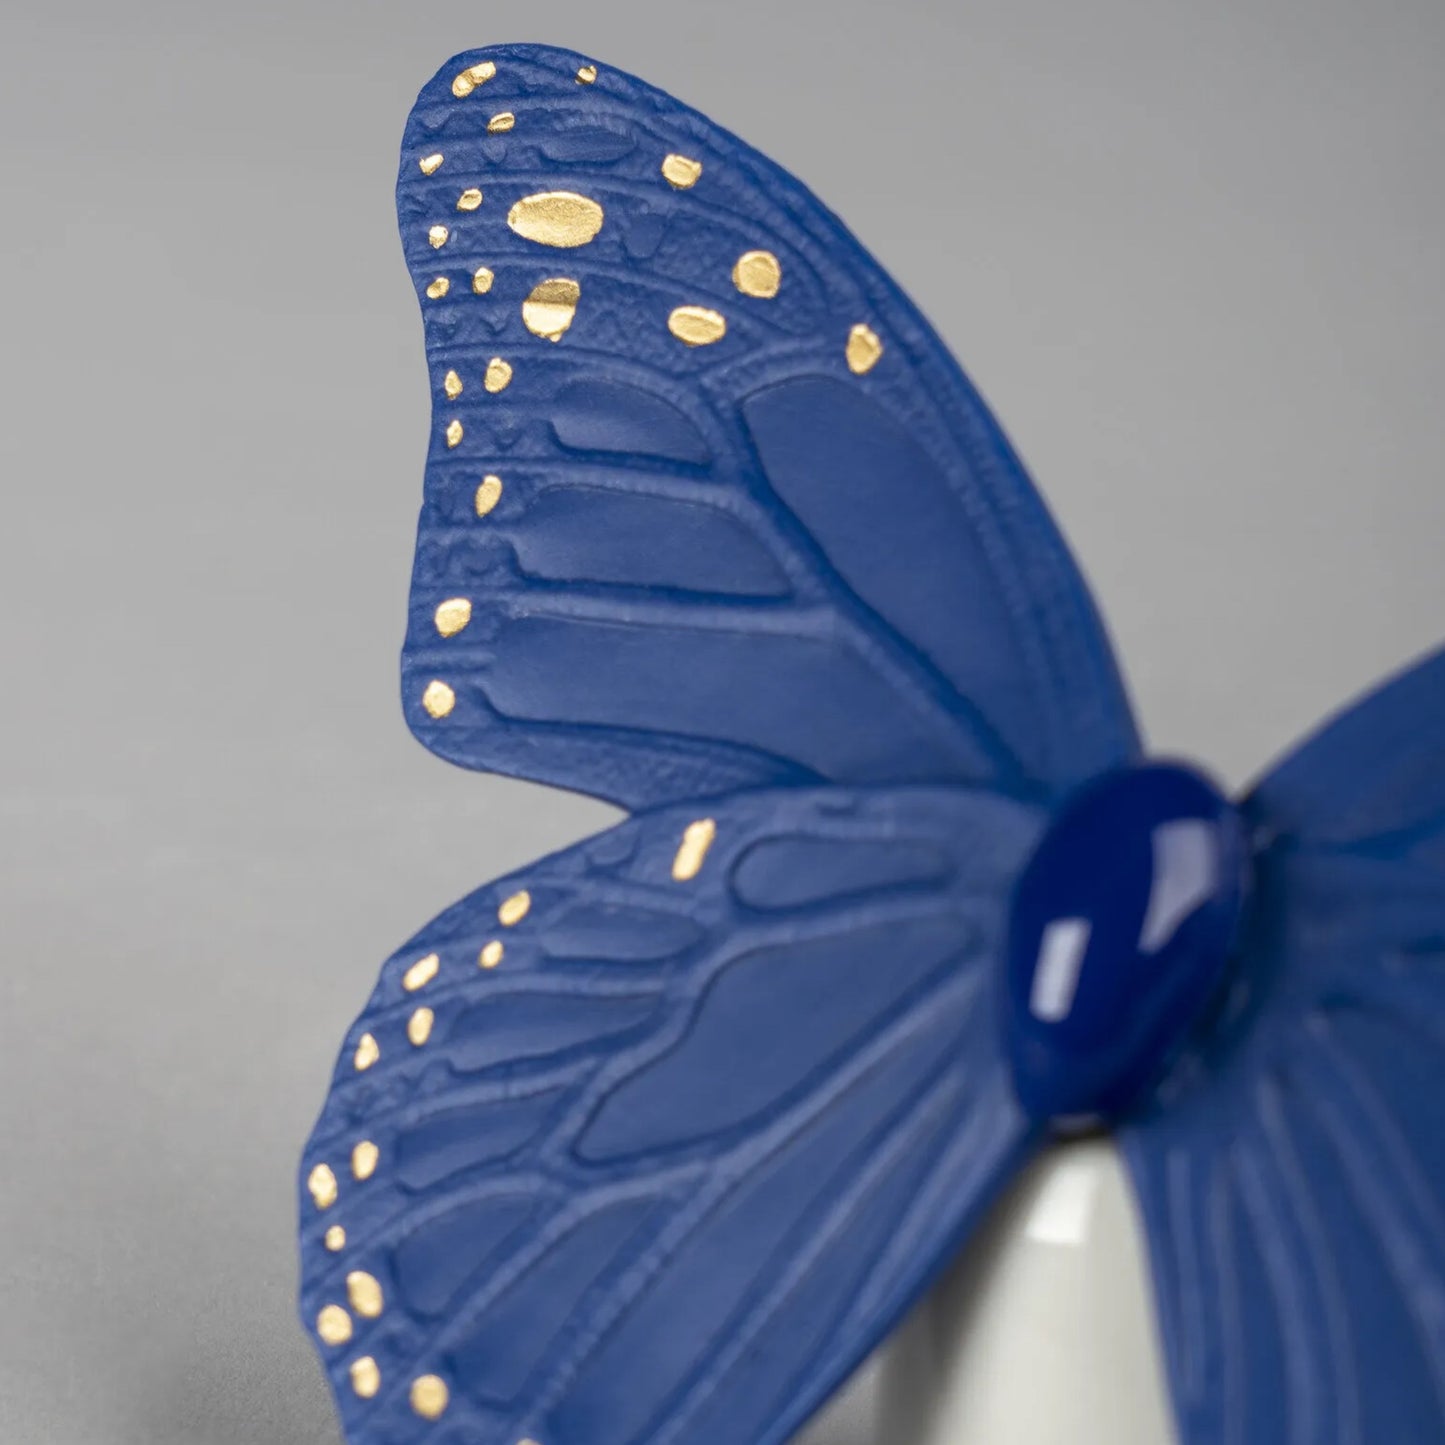 Lladró: Butterfly Figurine.